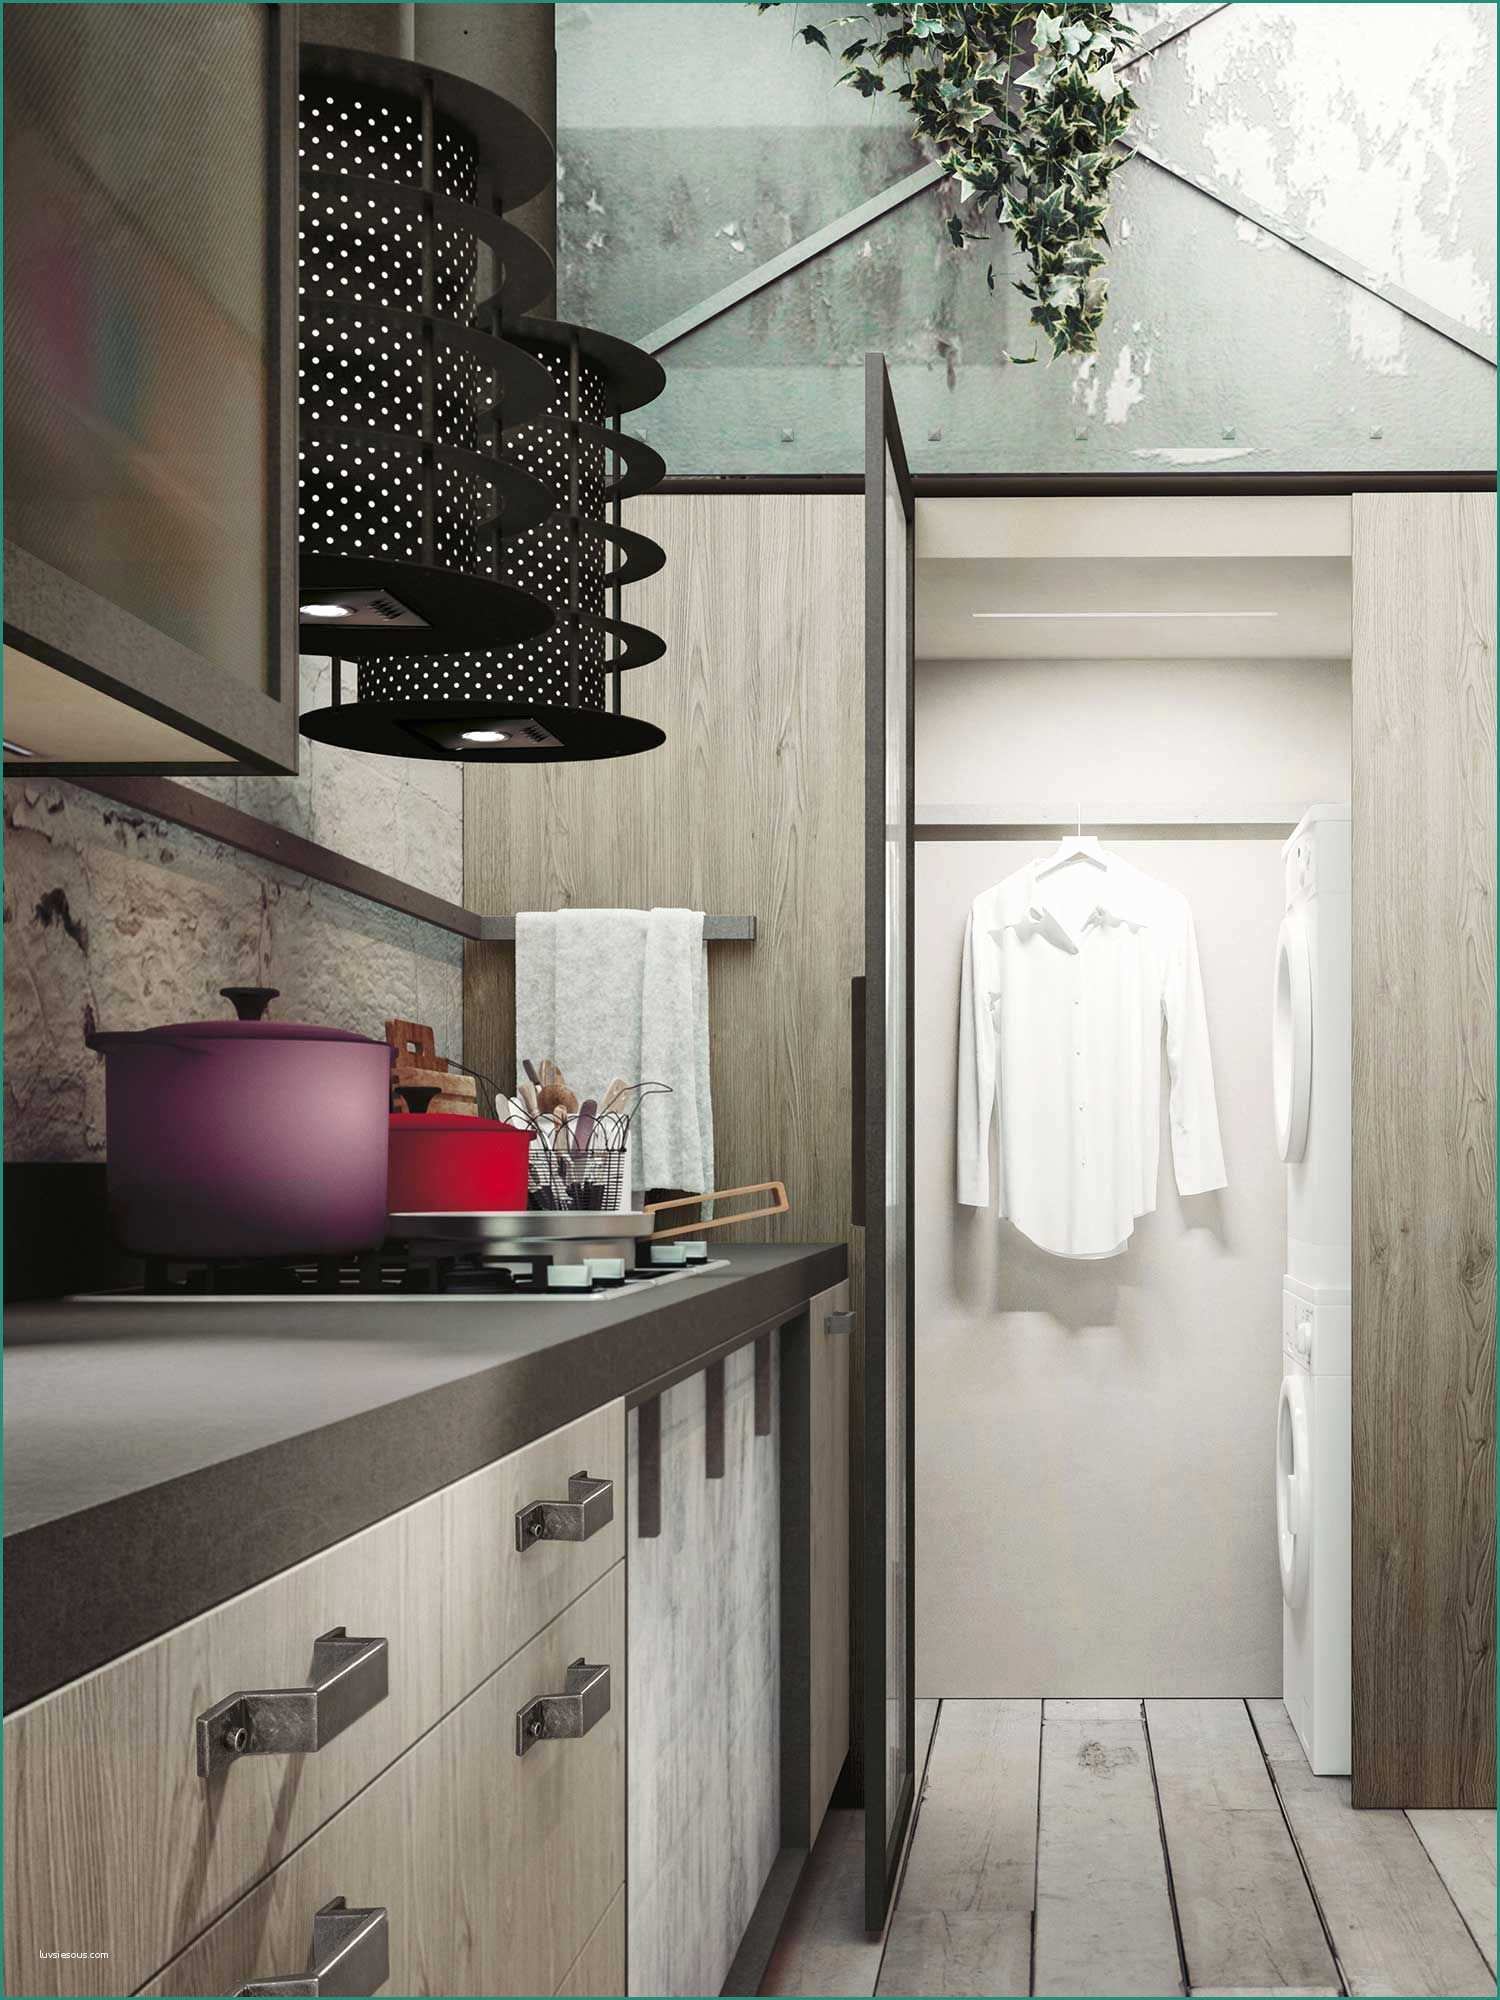 Colonna Porta Lavatrice E asciugatrice E Expression the Latest “urban” Trends Loft Kitchen